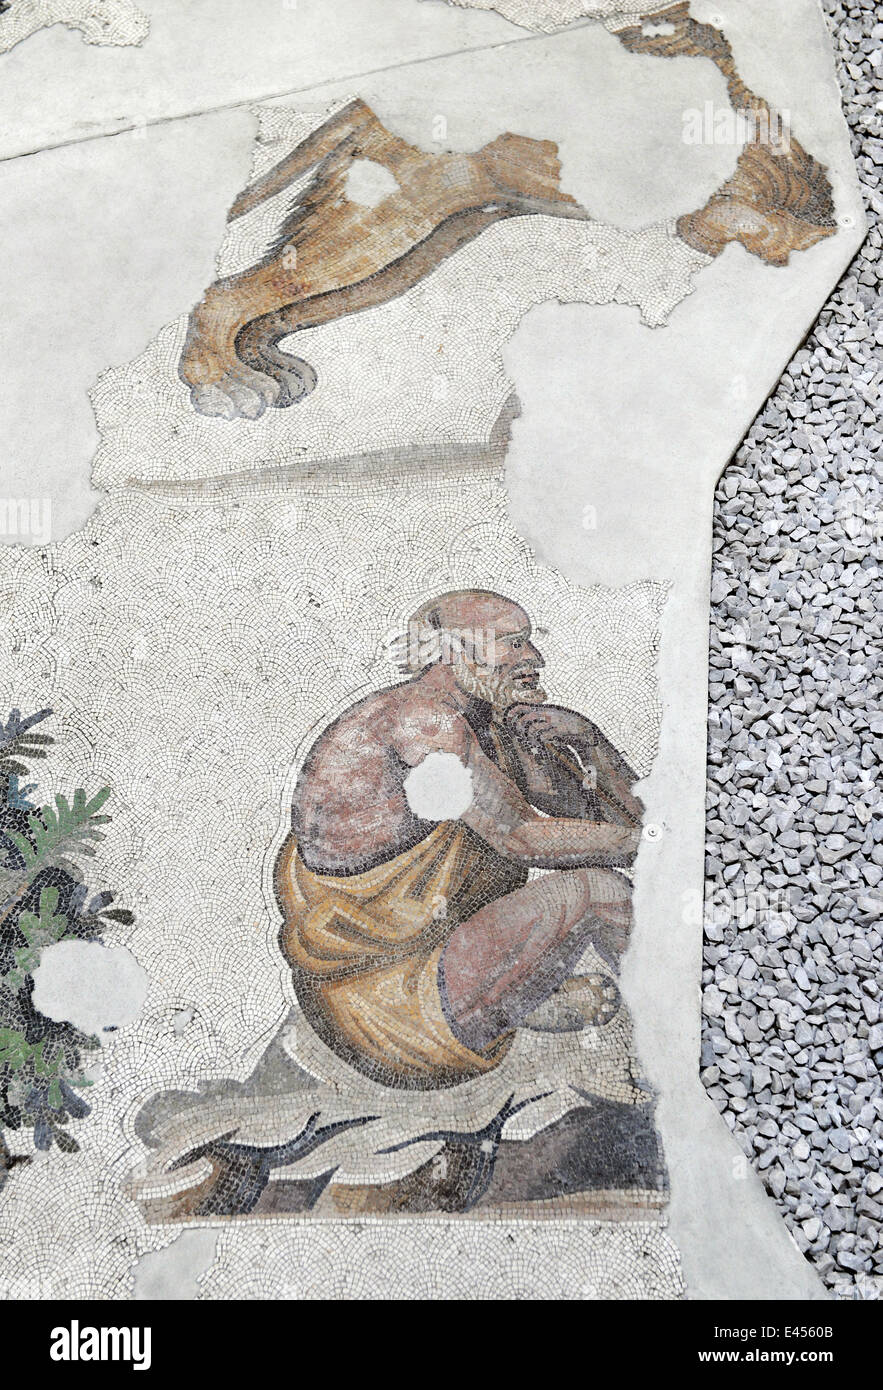 Großer Palast Mosaik-Museum. 4.-6. Jahrhunderte. Detail eines Mosaiks Darstellung eines älteren Mannes. Istanbul. Turkei. Stockfoto